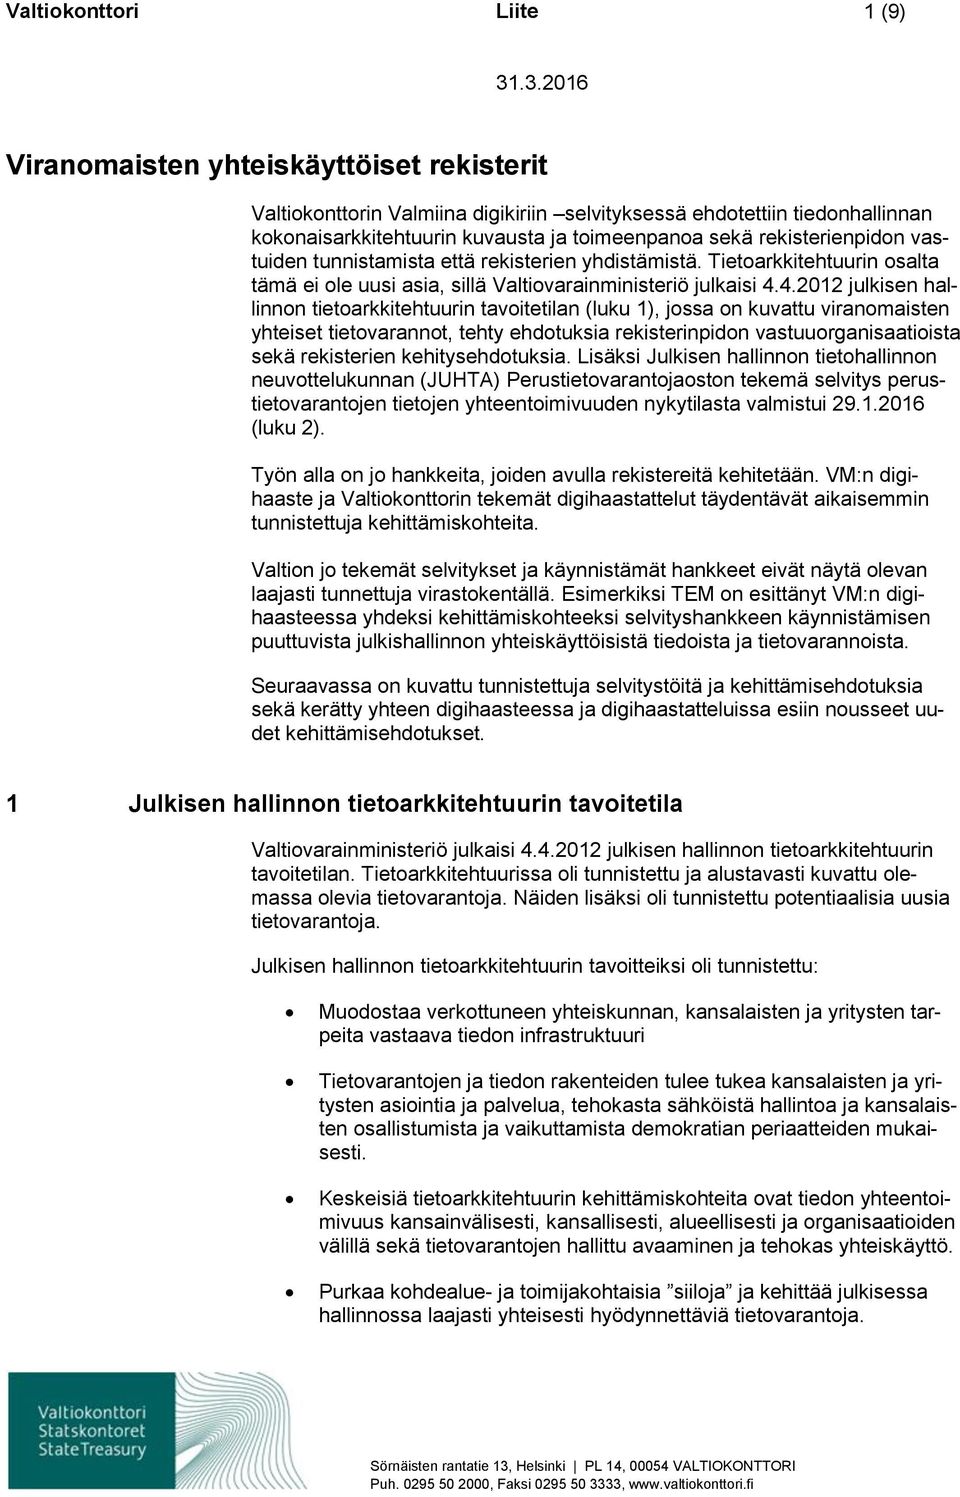 4.2012 julkisen hallinnn tietarkkitehtuurin tavitetilan (luku 1), jssa n kuvattu viranmaisten yhteiset tietvarannt, tehty ehdtuksia rekisterinpidn vastuurganisaatiista sekä rekisterien